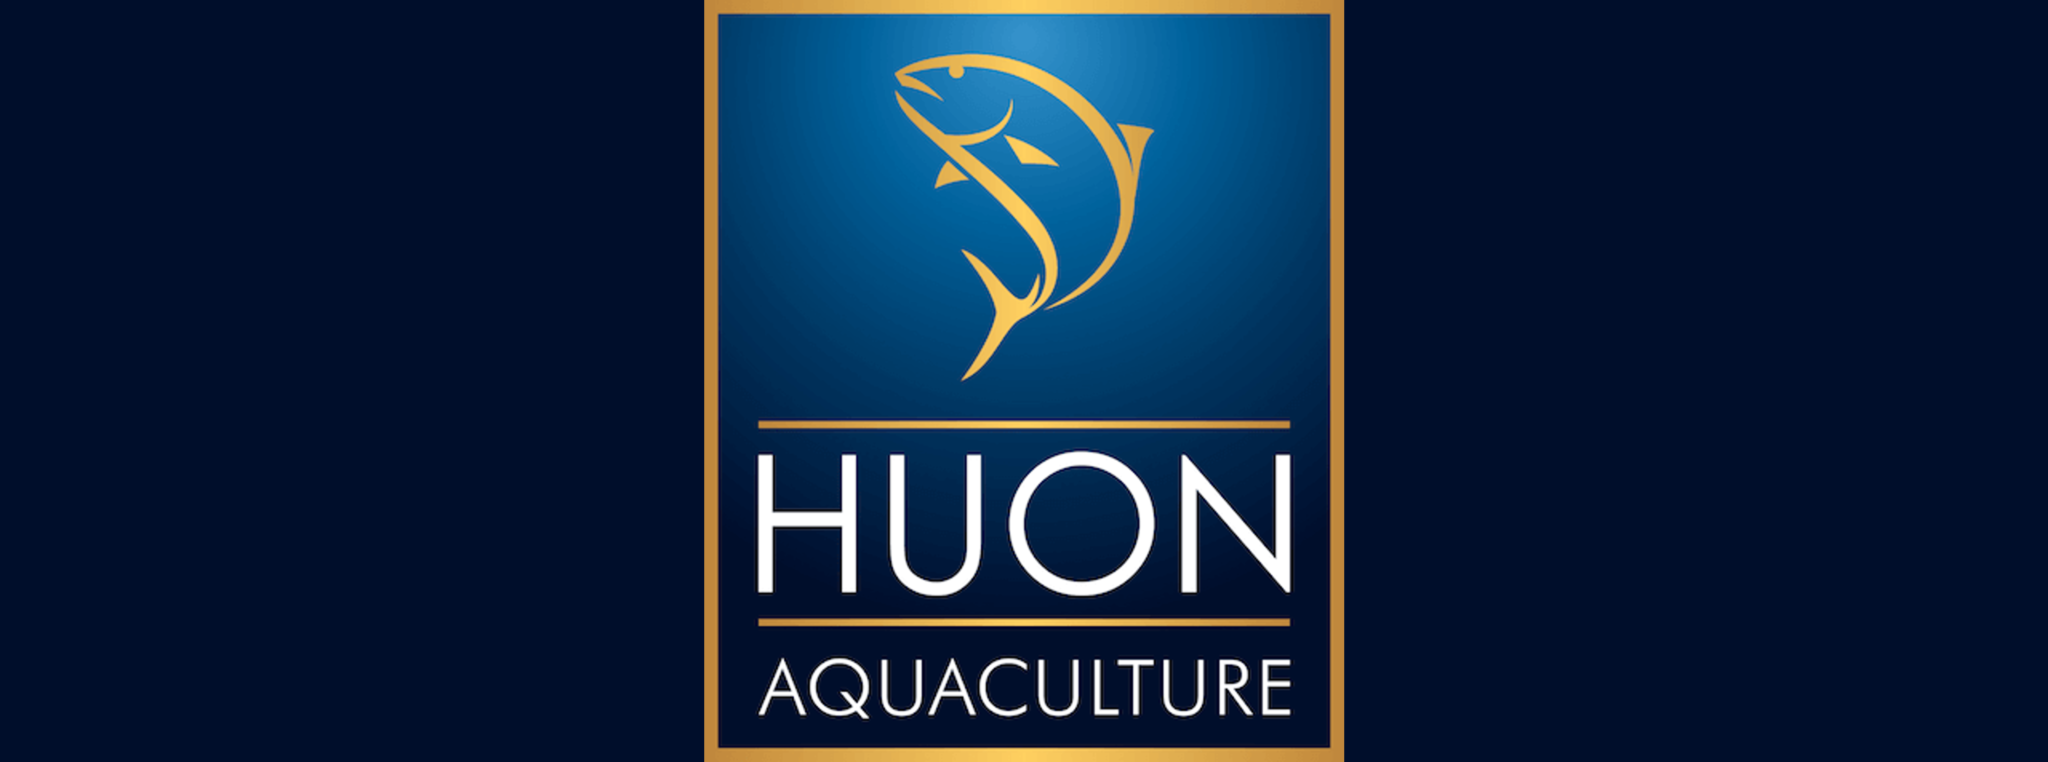 Global Salmon Initiative anunció ingreso de Huon Aquaculture como nuevo socio